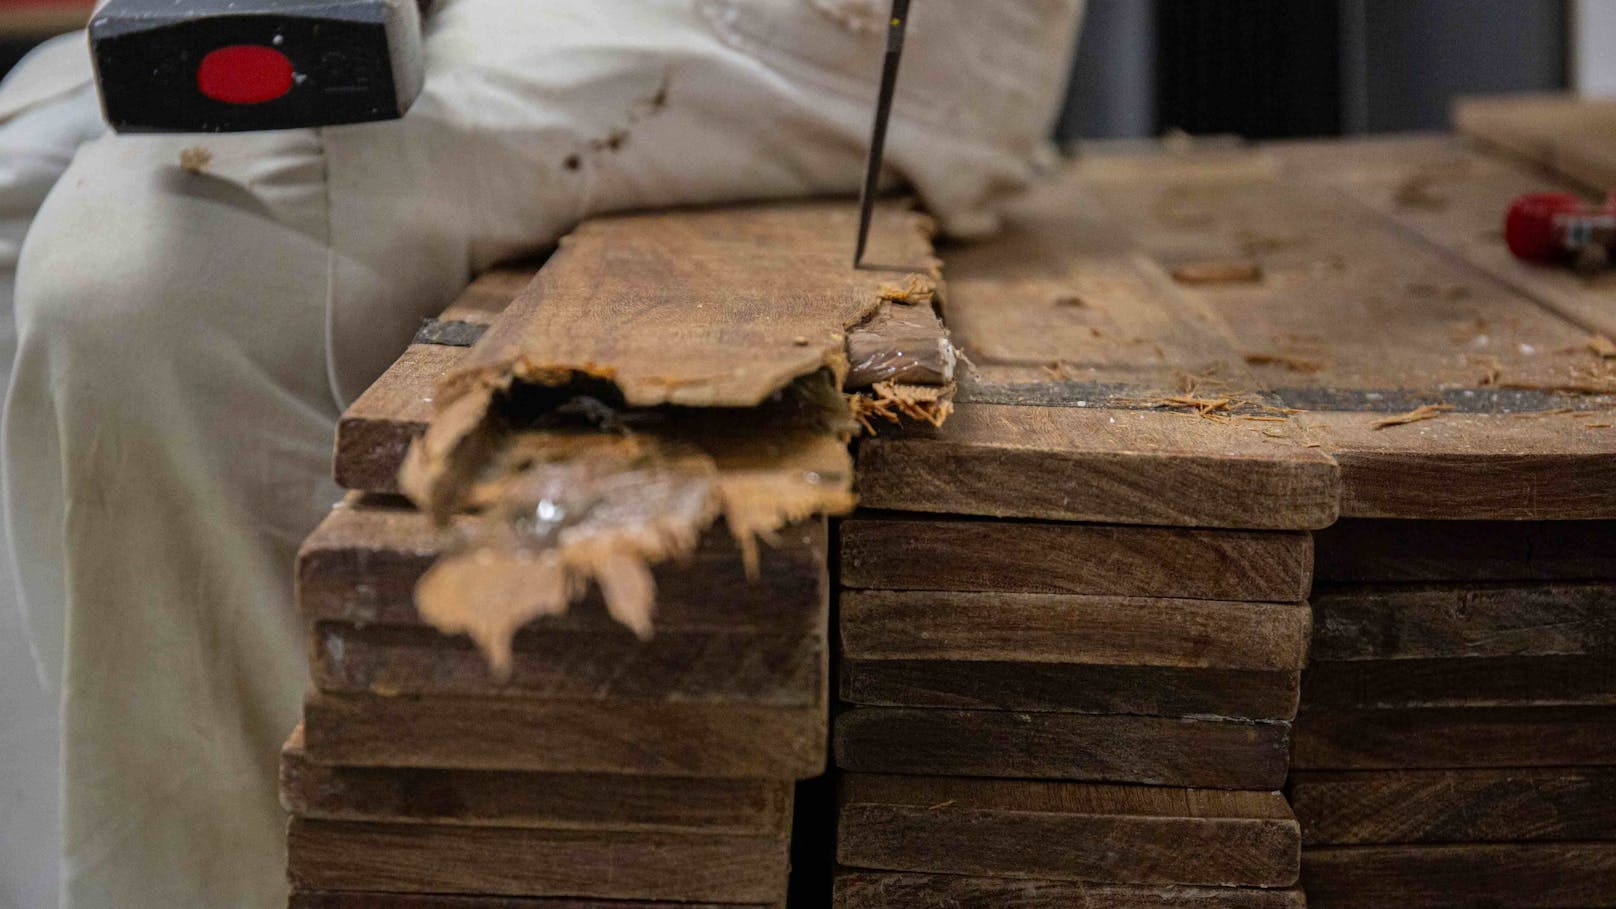 NÖ-Polizei stellt 137 Kilo Koks in Holzbrettern sicher